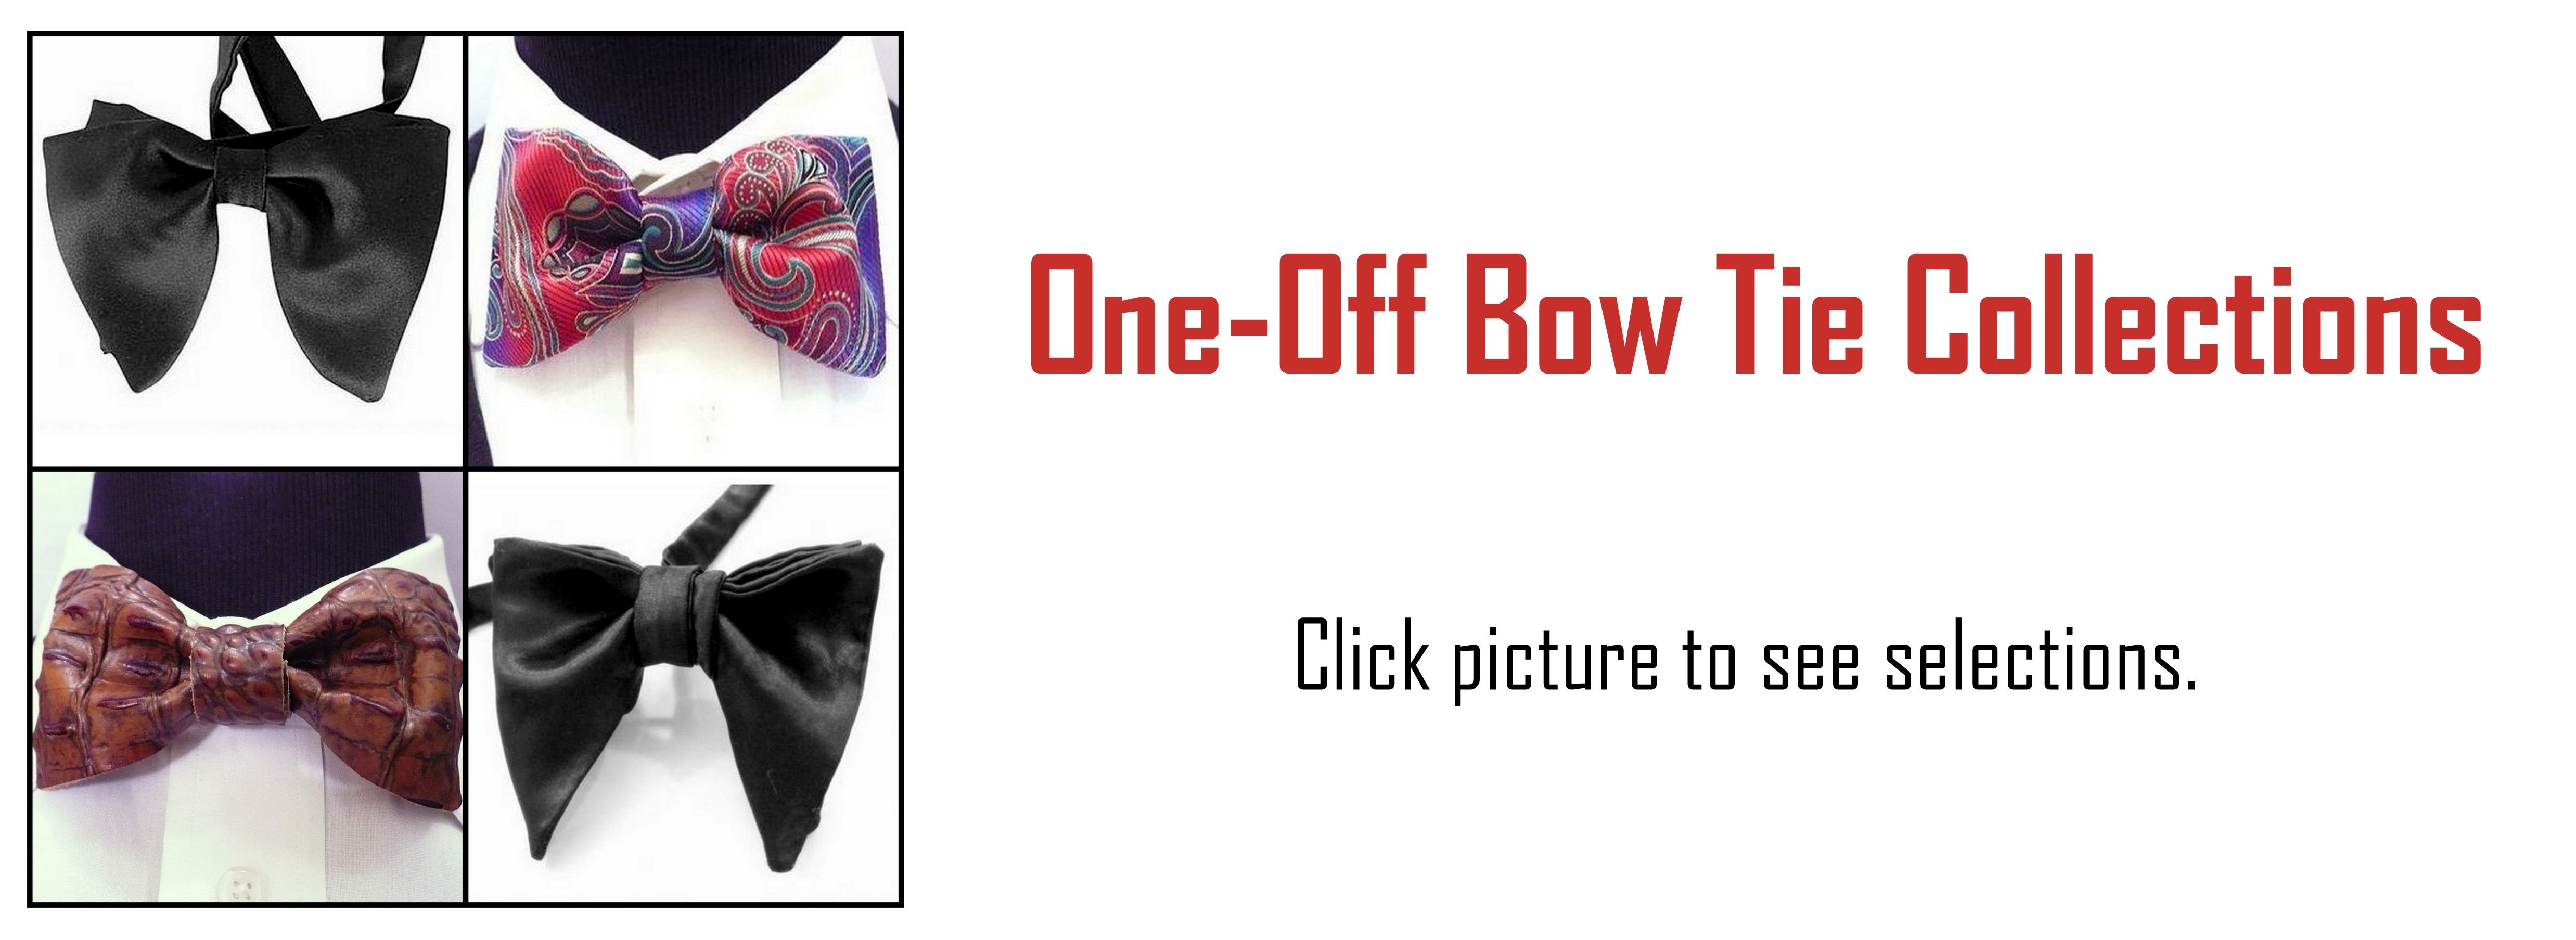 one-off-bow-ties.jpg